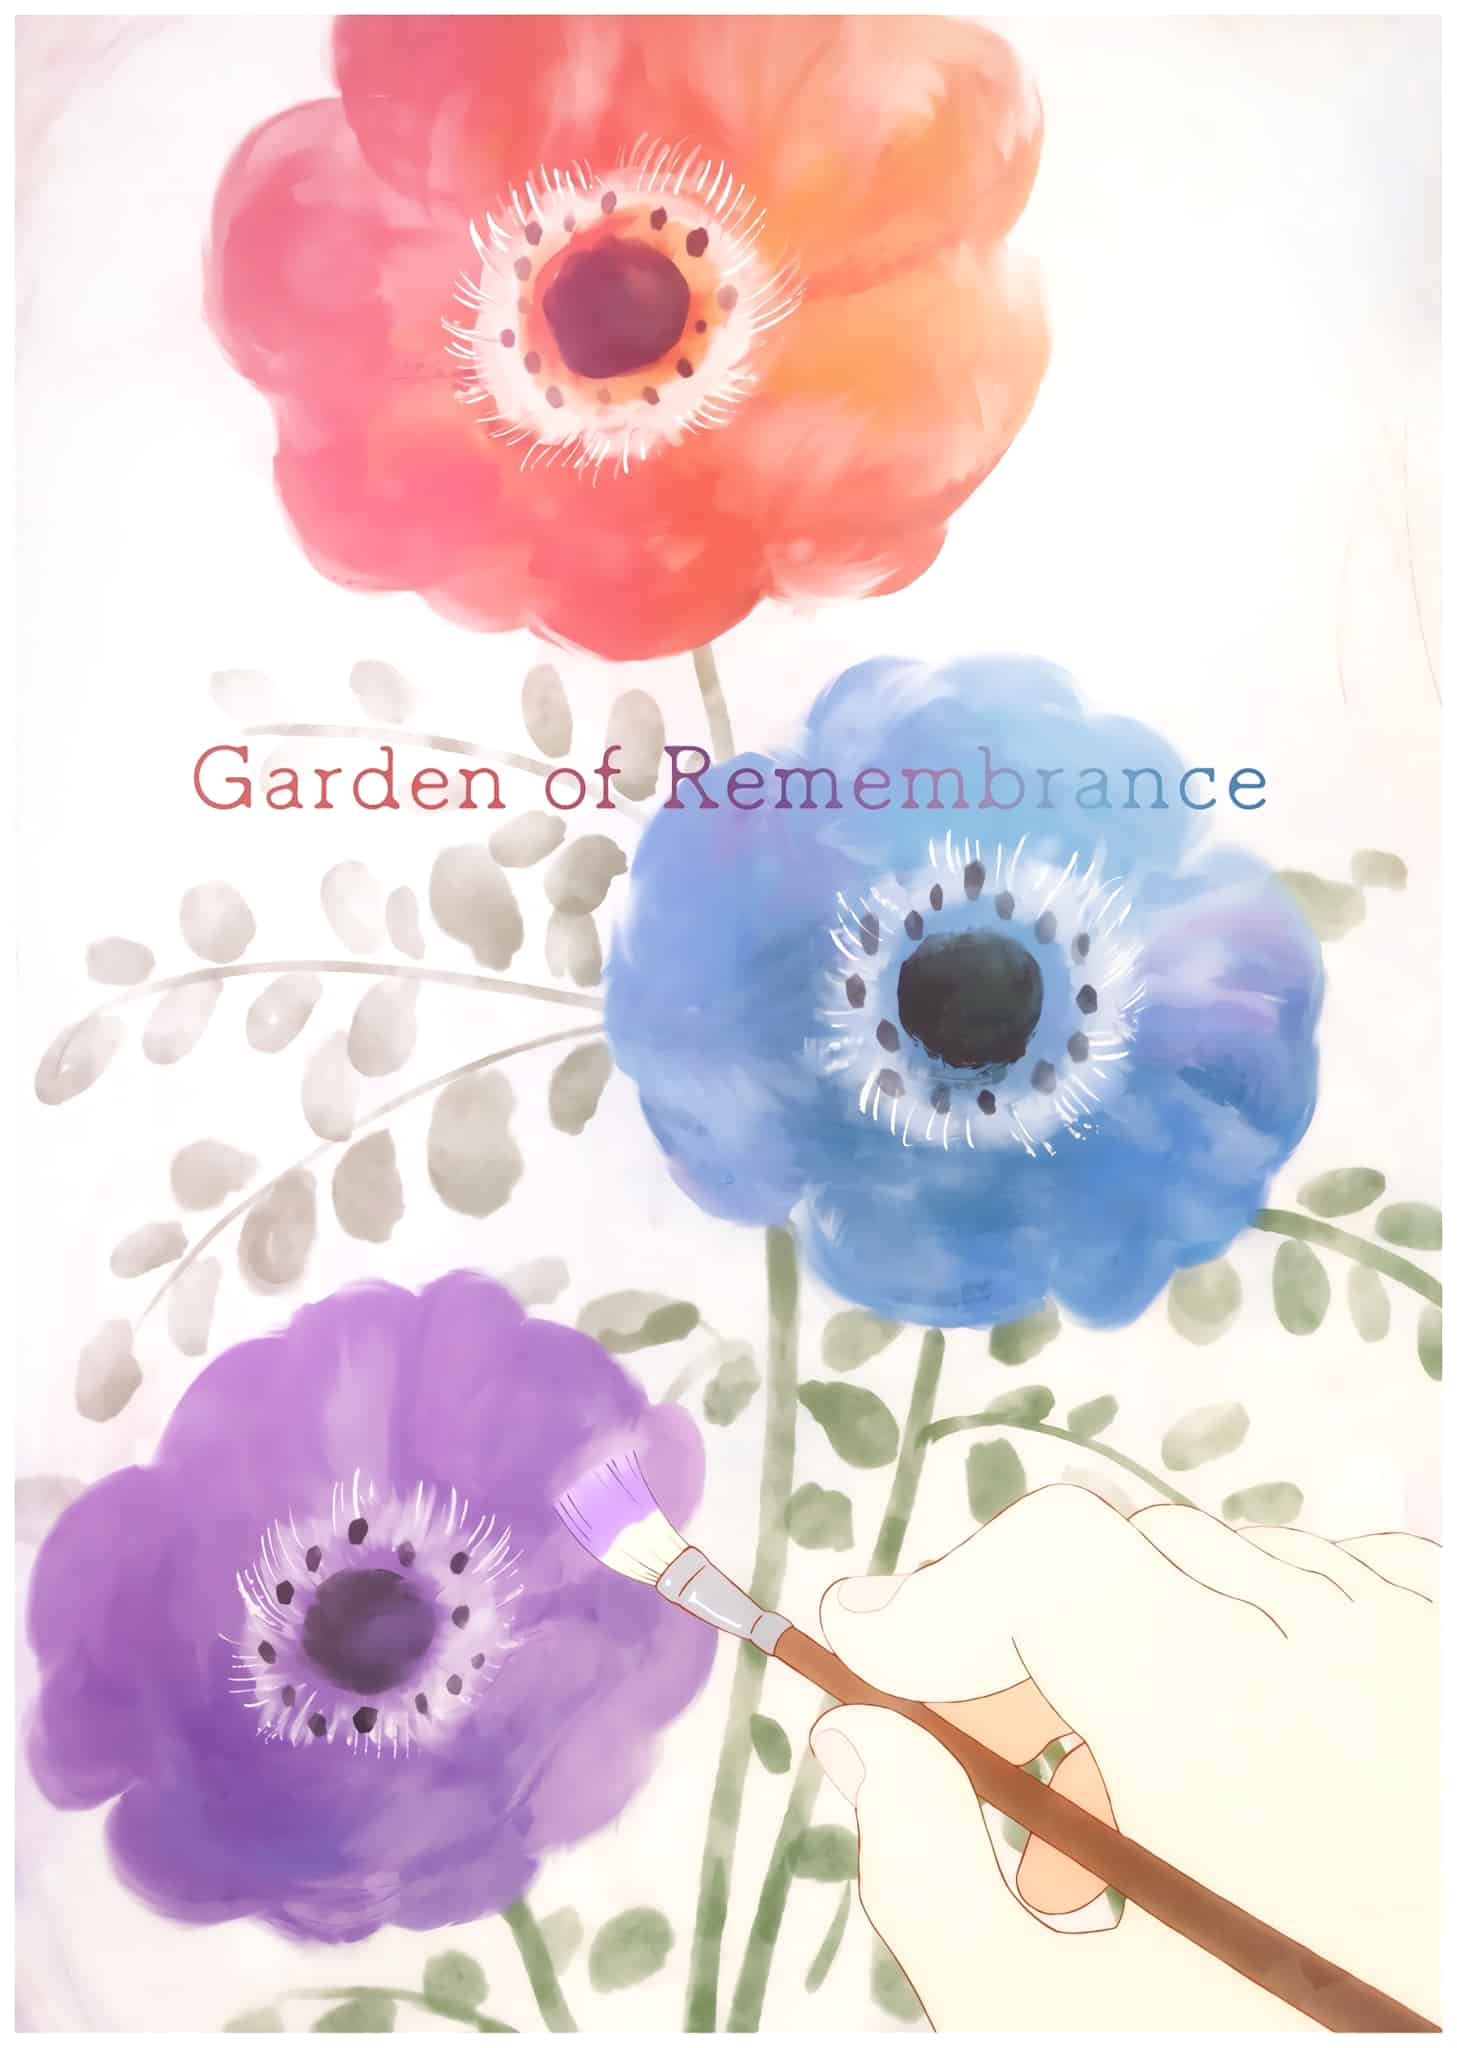 Annonce de lanime original Garden of Remembrance pour 2023